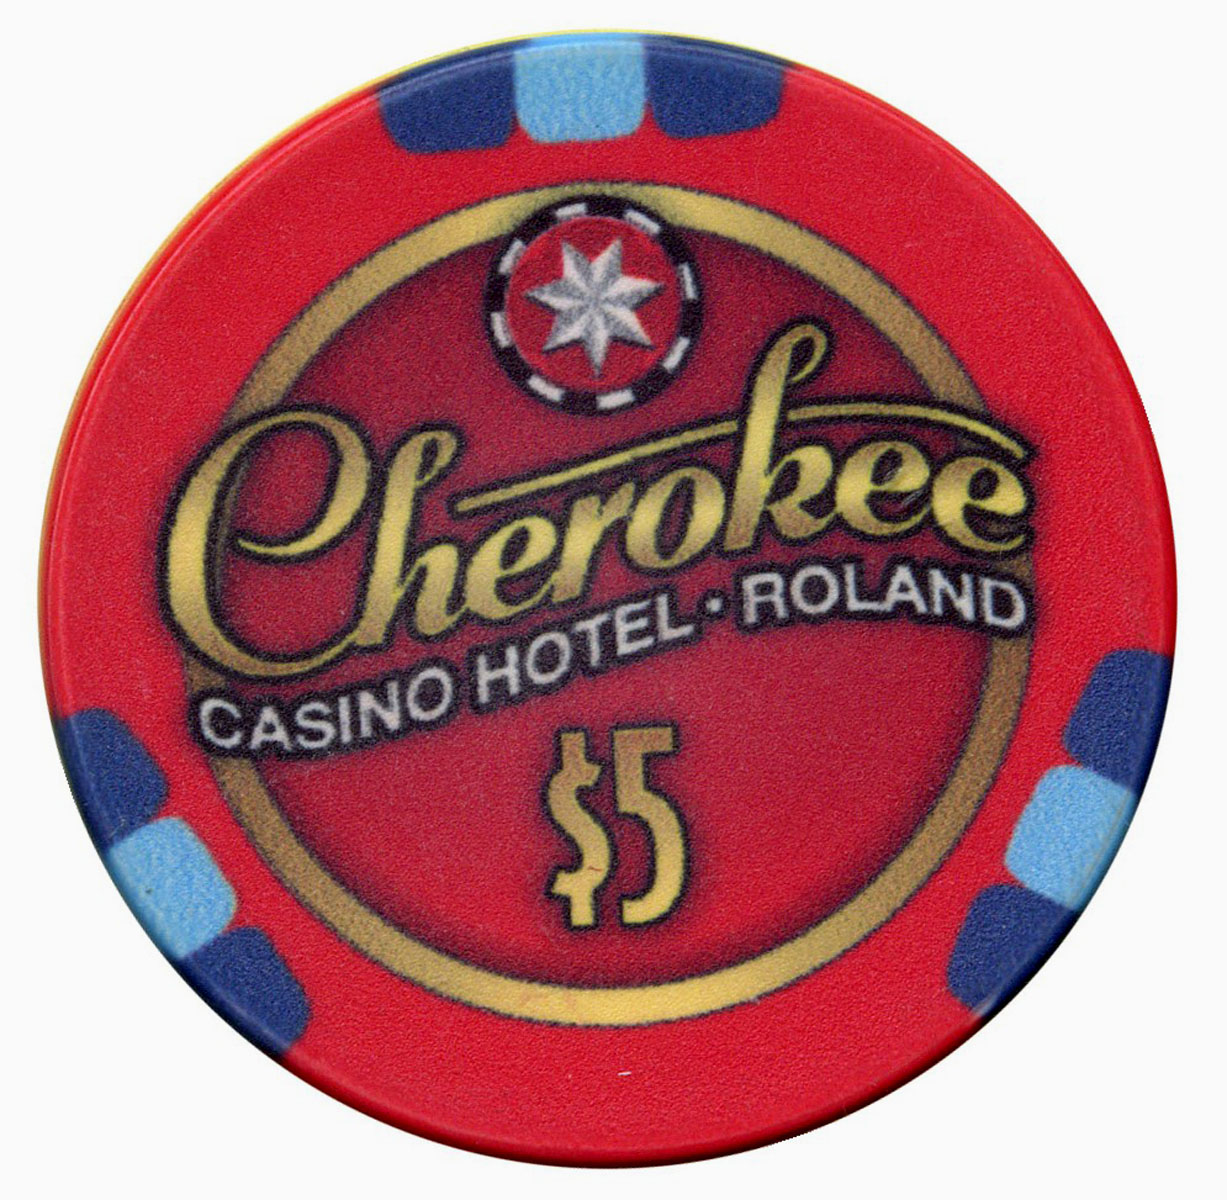 cherokee casino roland phone number 800